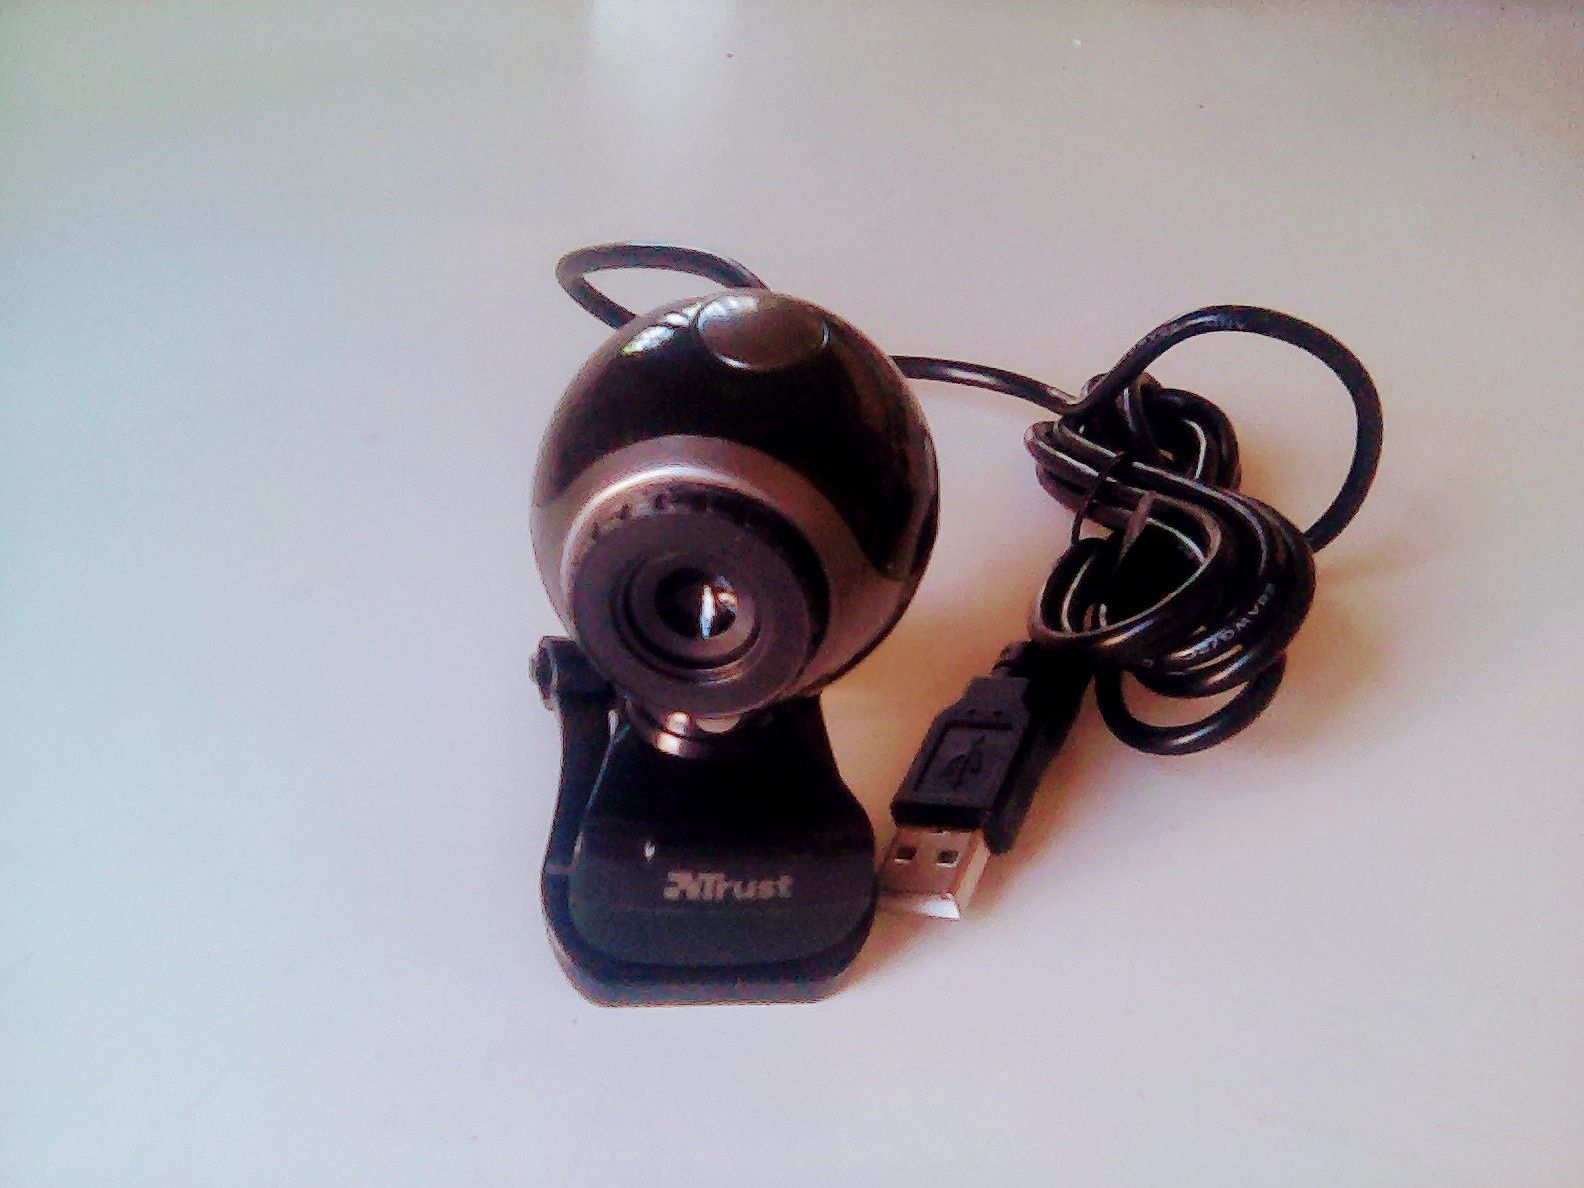 Webcam TRUST para PC e Portáteis - NOVO